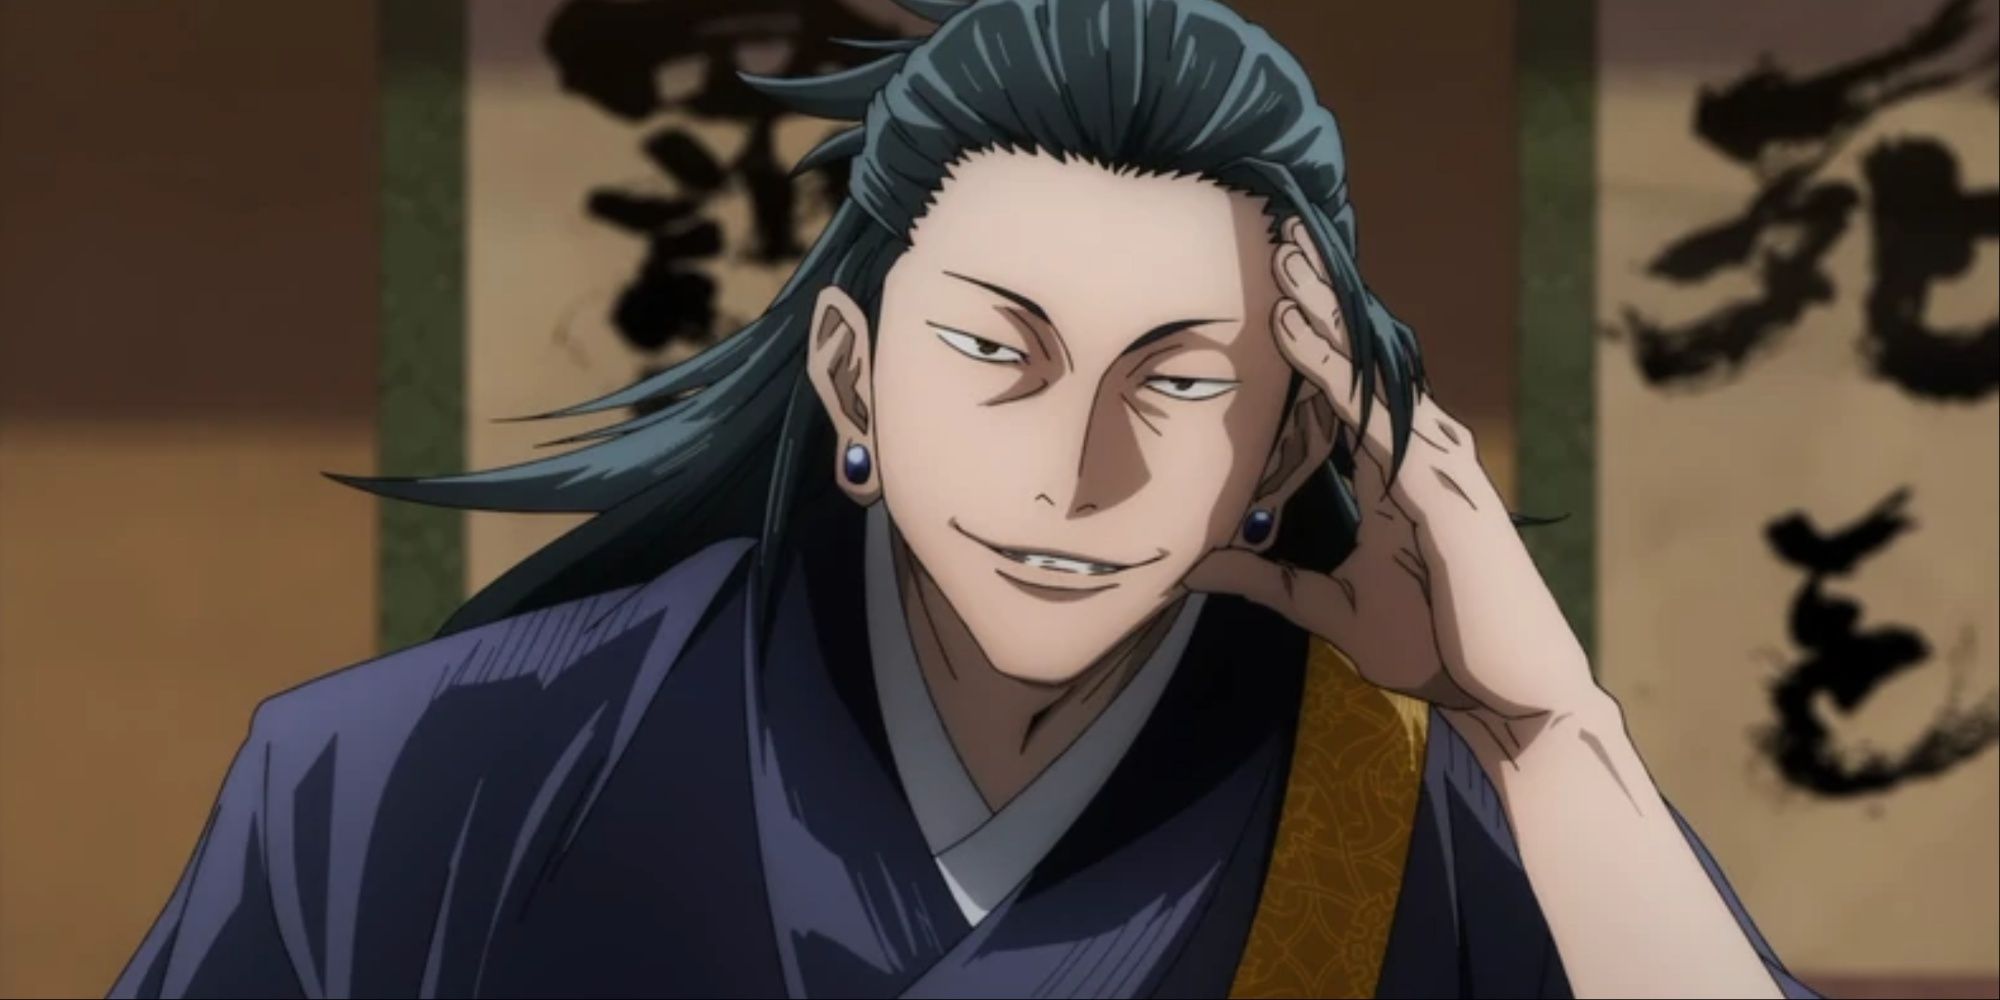 Suguru Geto med ett ondskefullt leende i Jujutsu Kaisen.